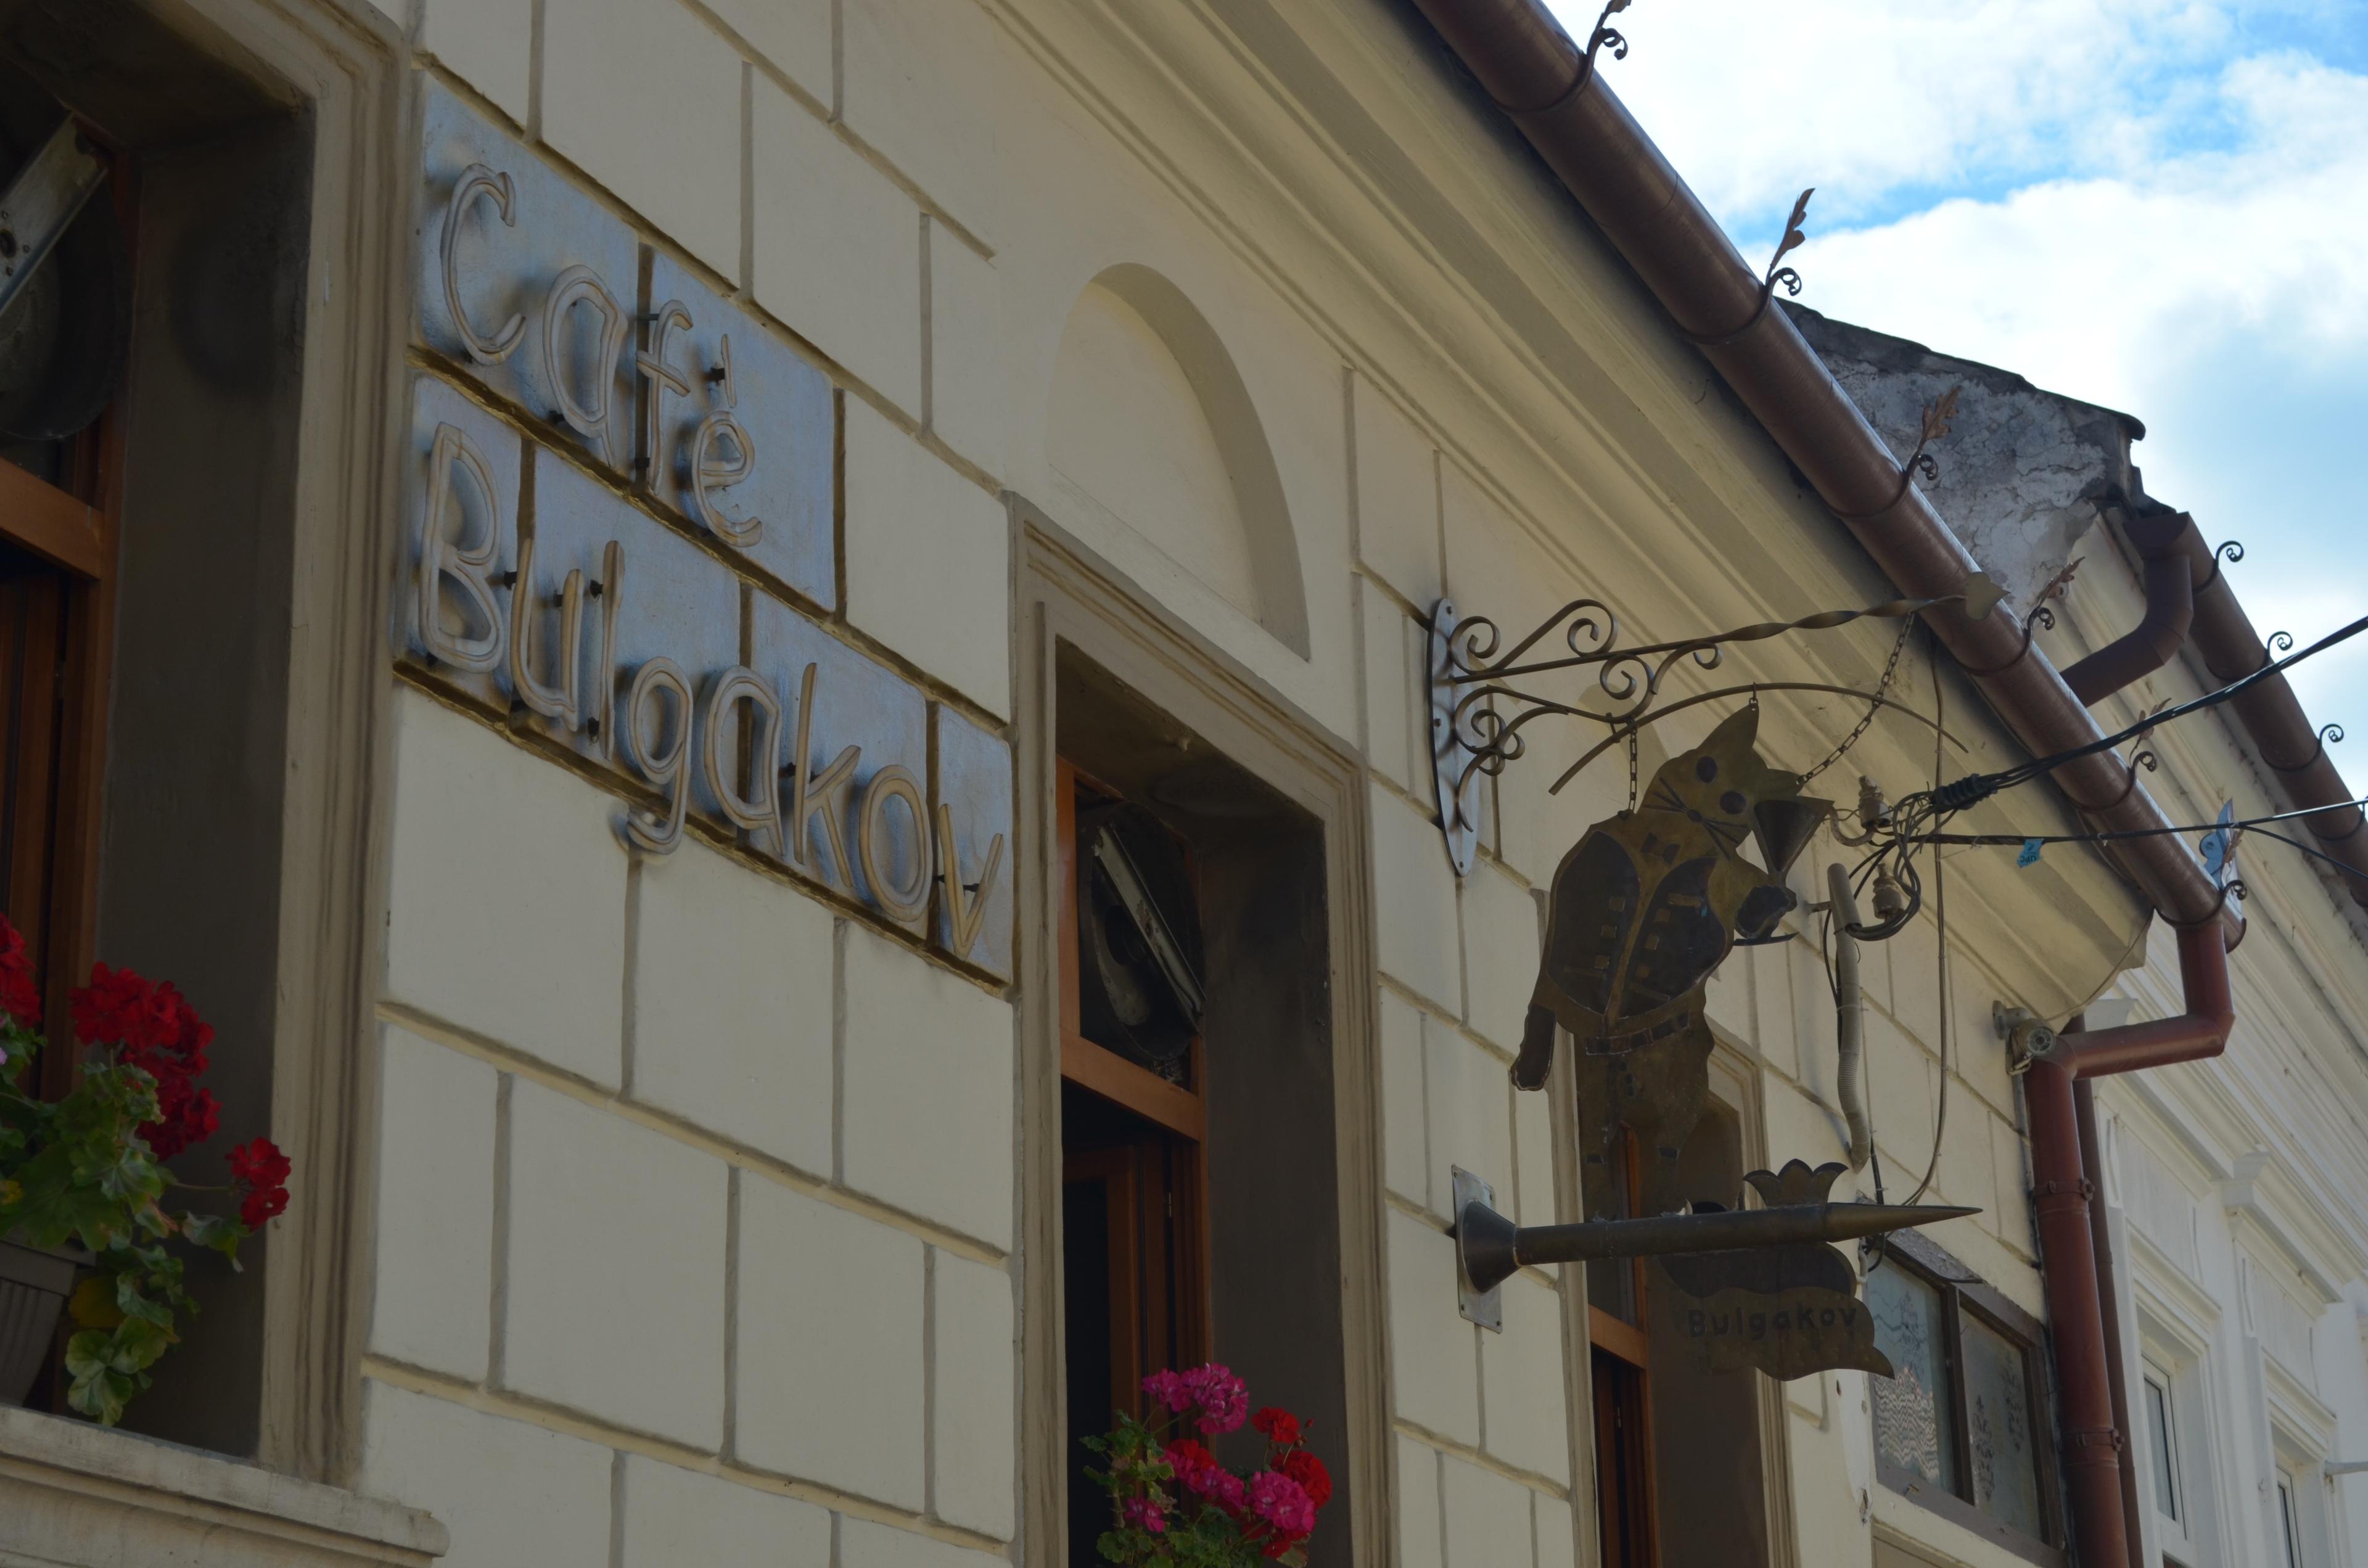 Cover image of this place Café Bulgakov